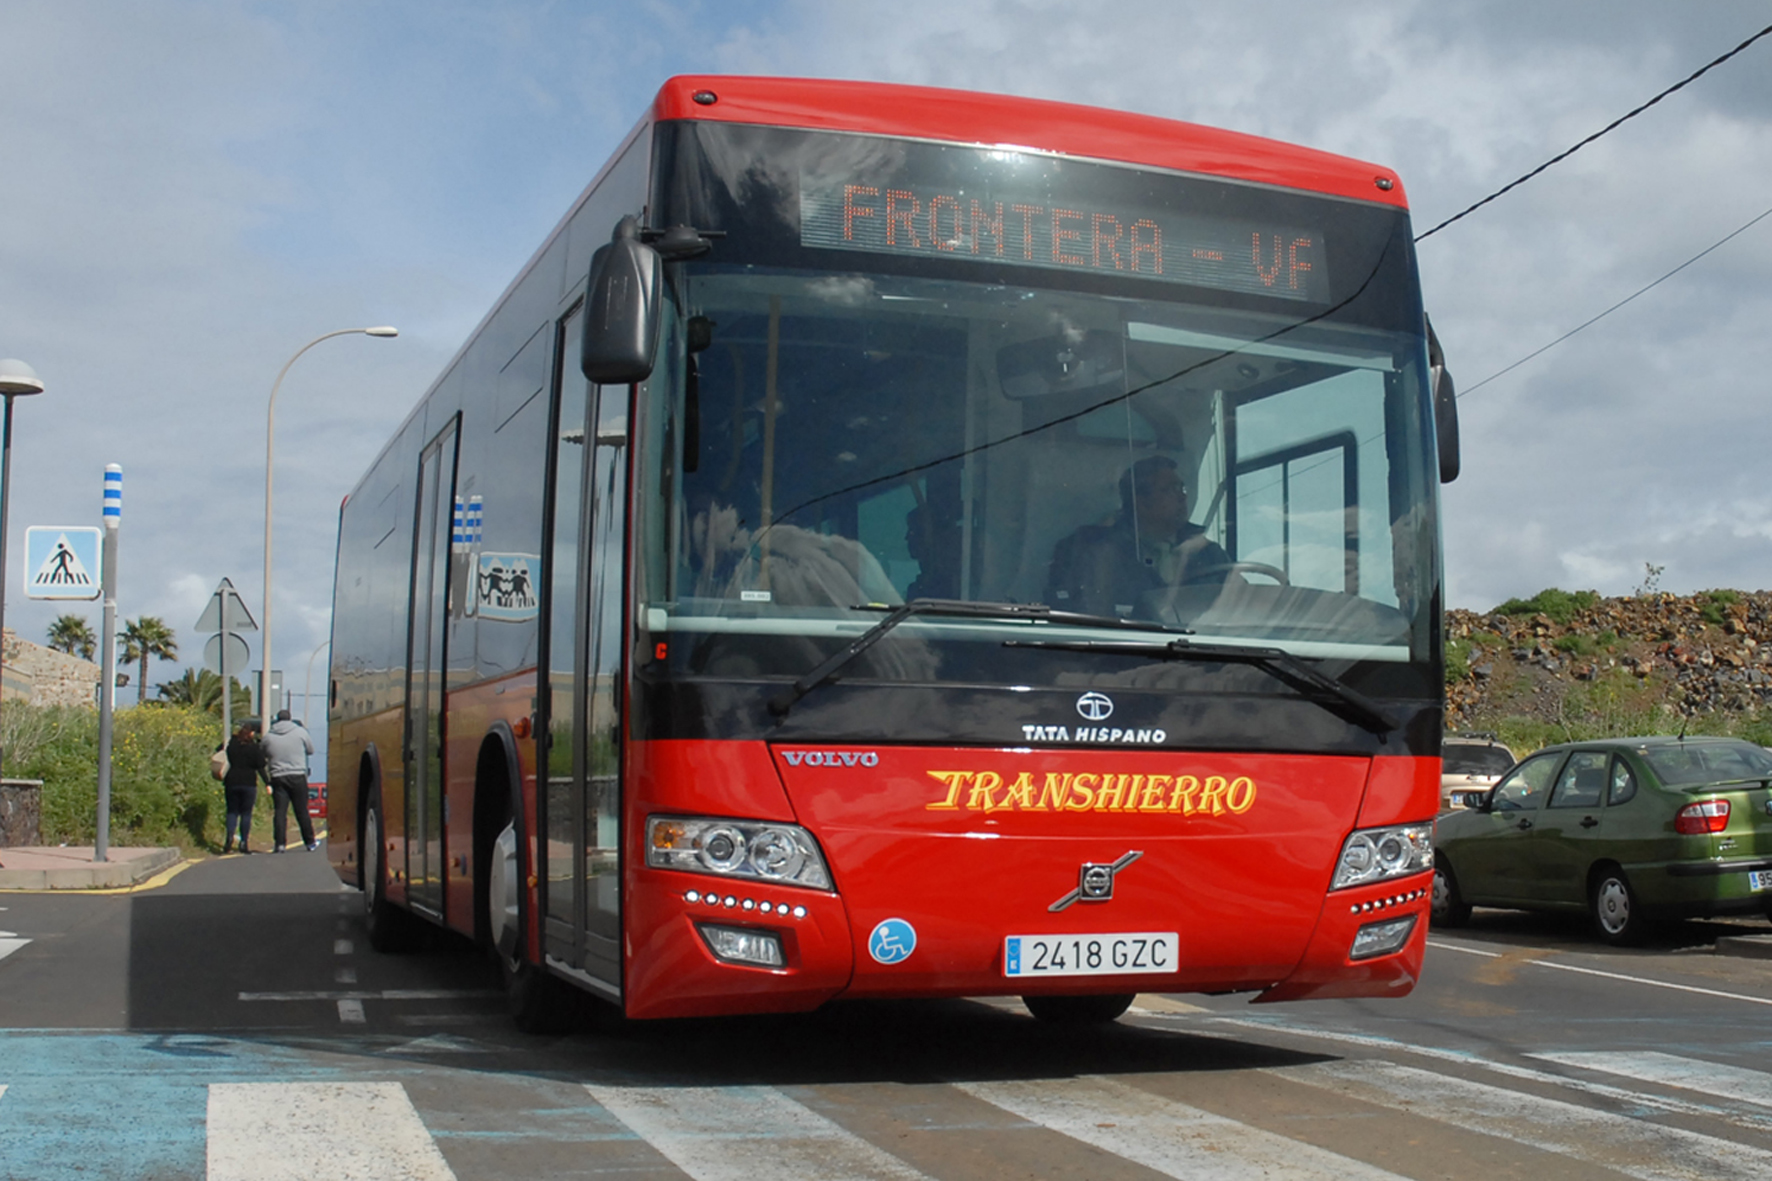 Transhierro reduce hasta en un 40% el transporte regular de viajeros